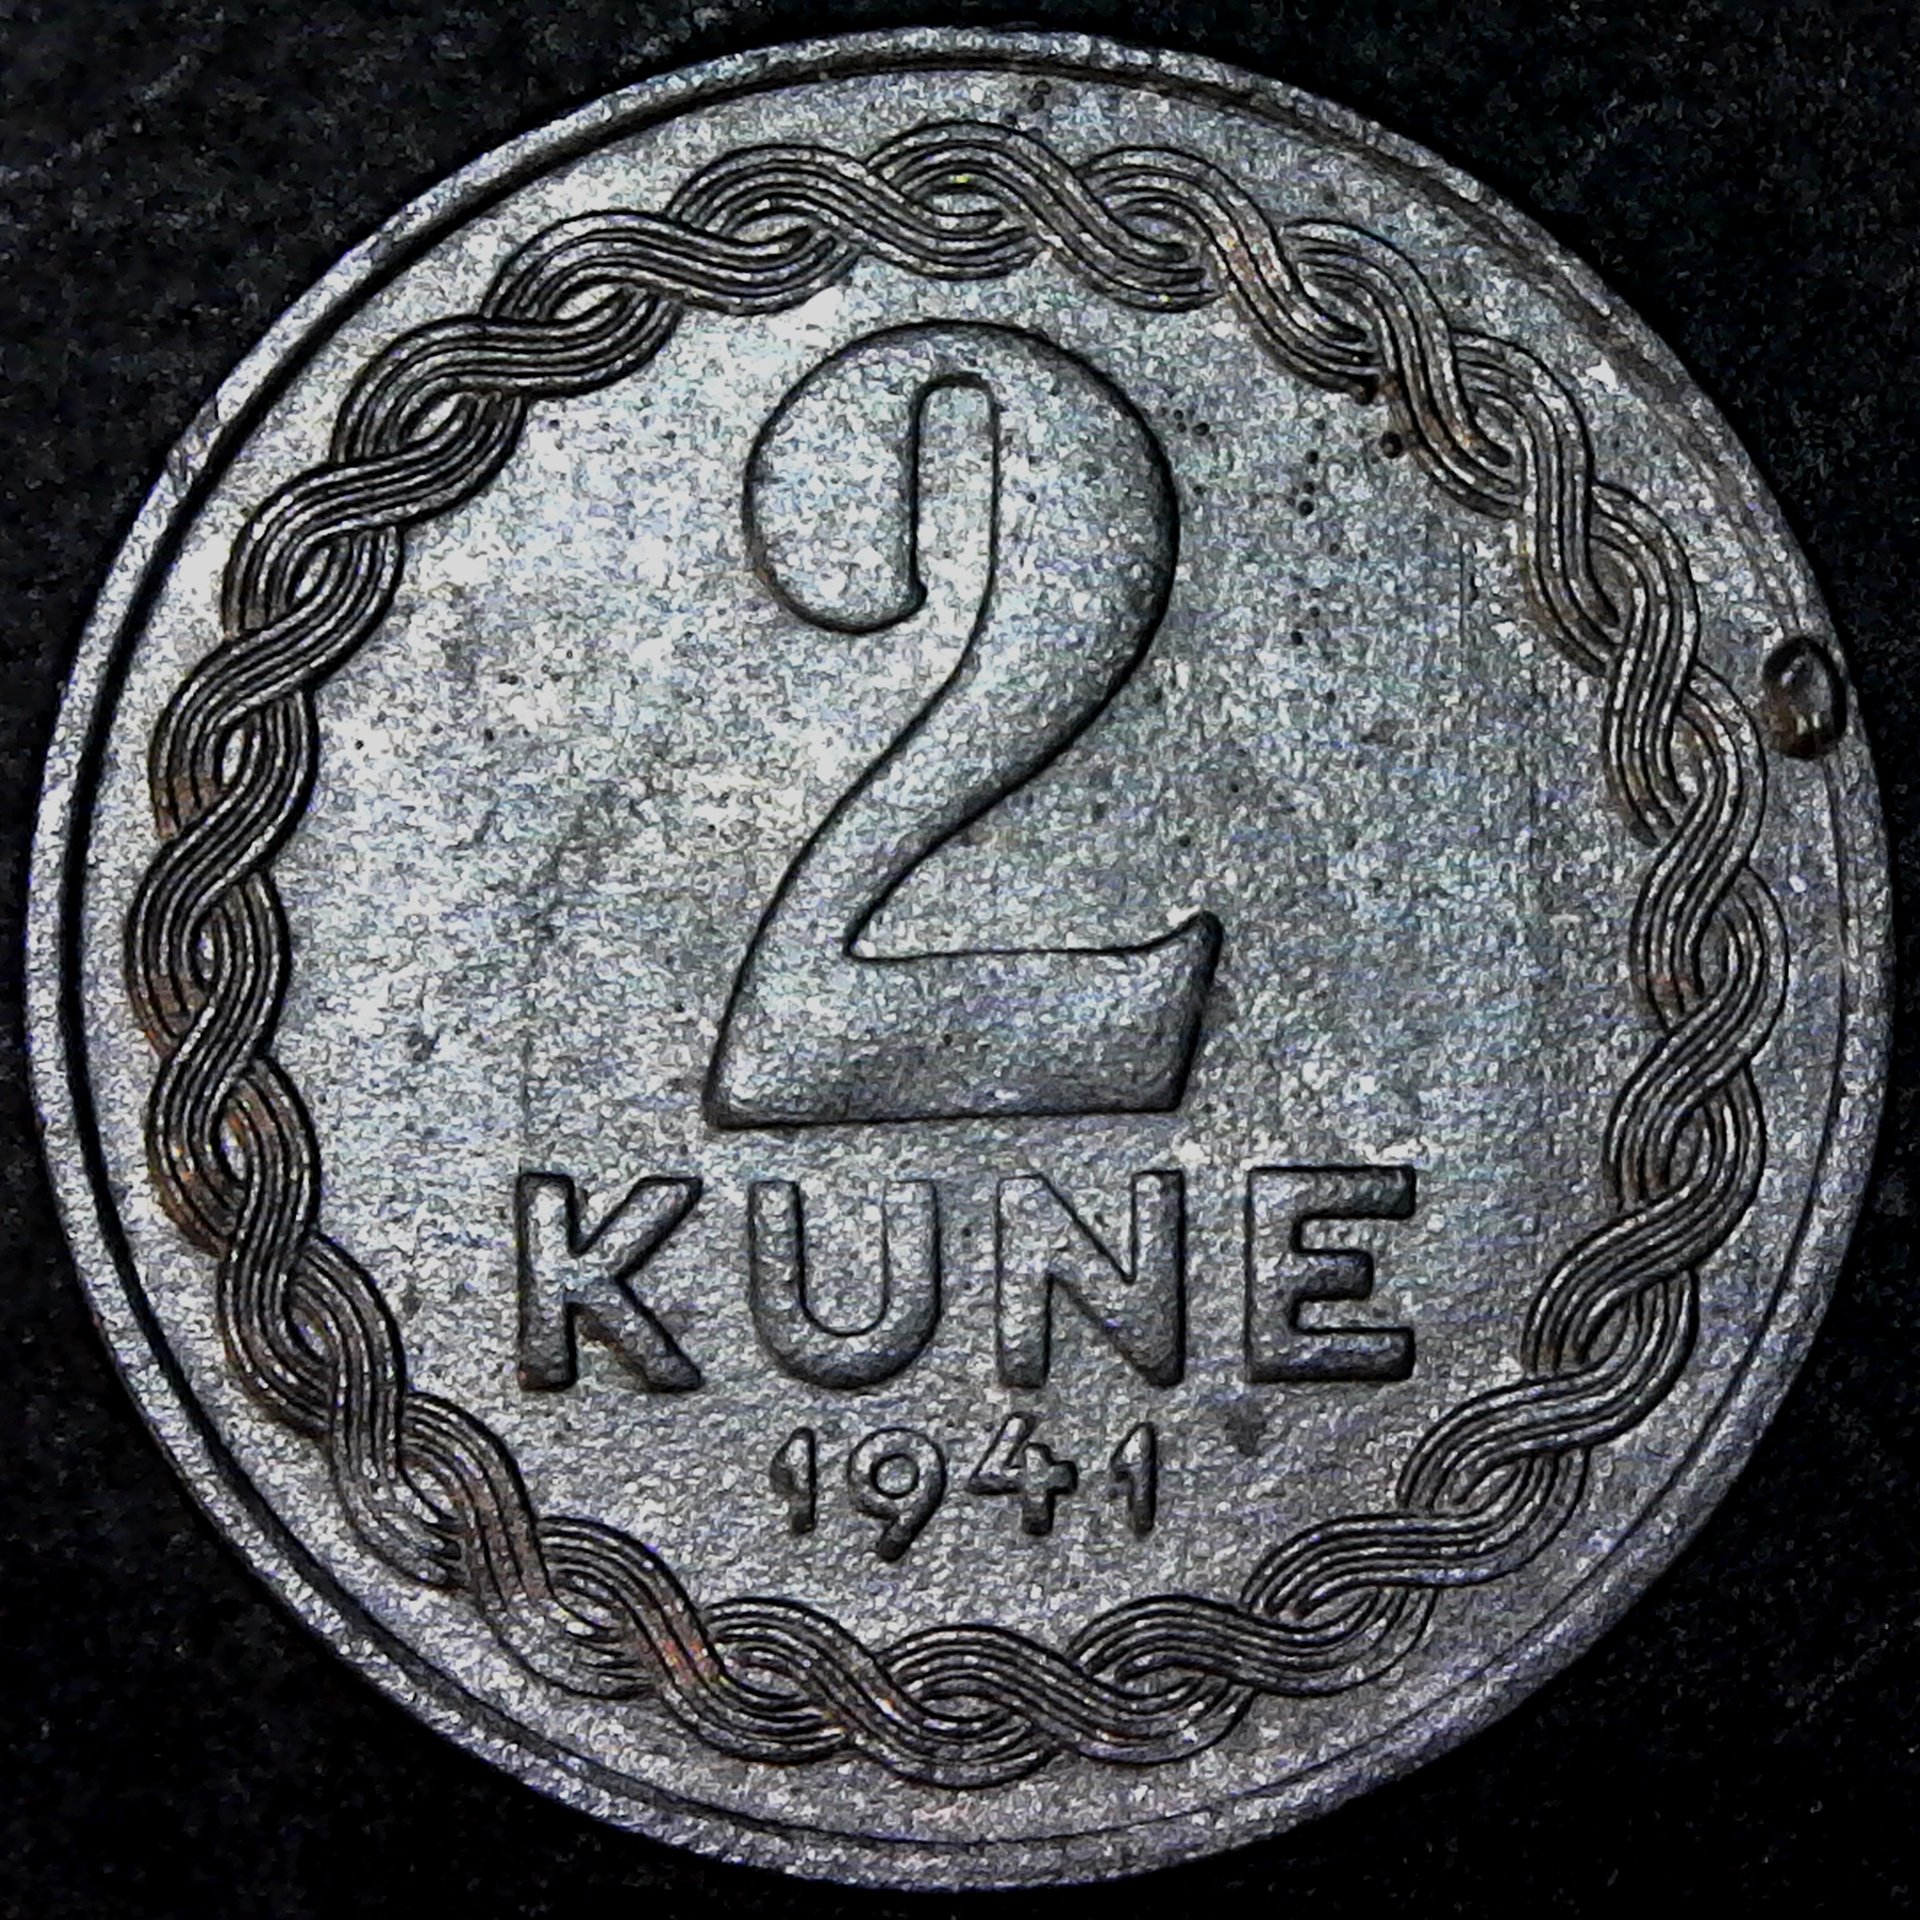 Croatia 2 kune 1941 reverse.jpg